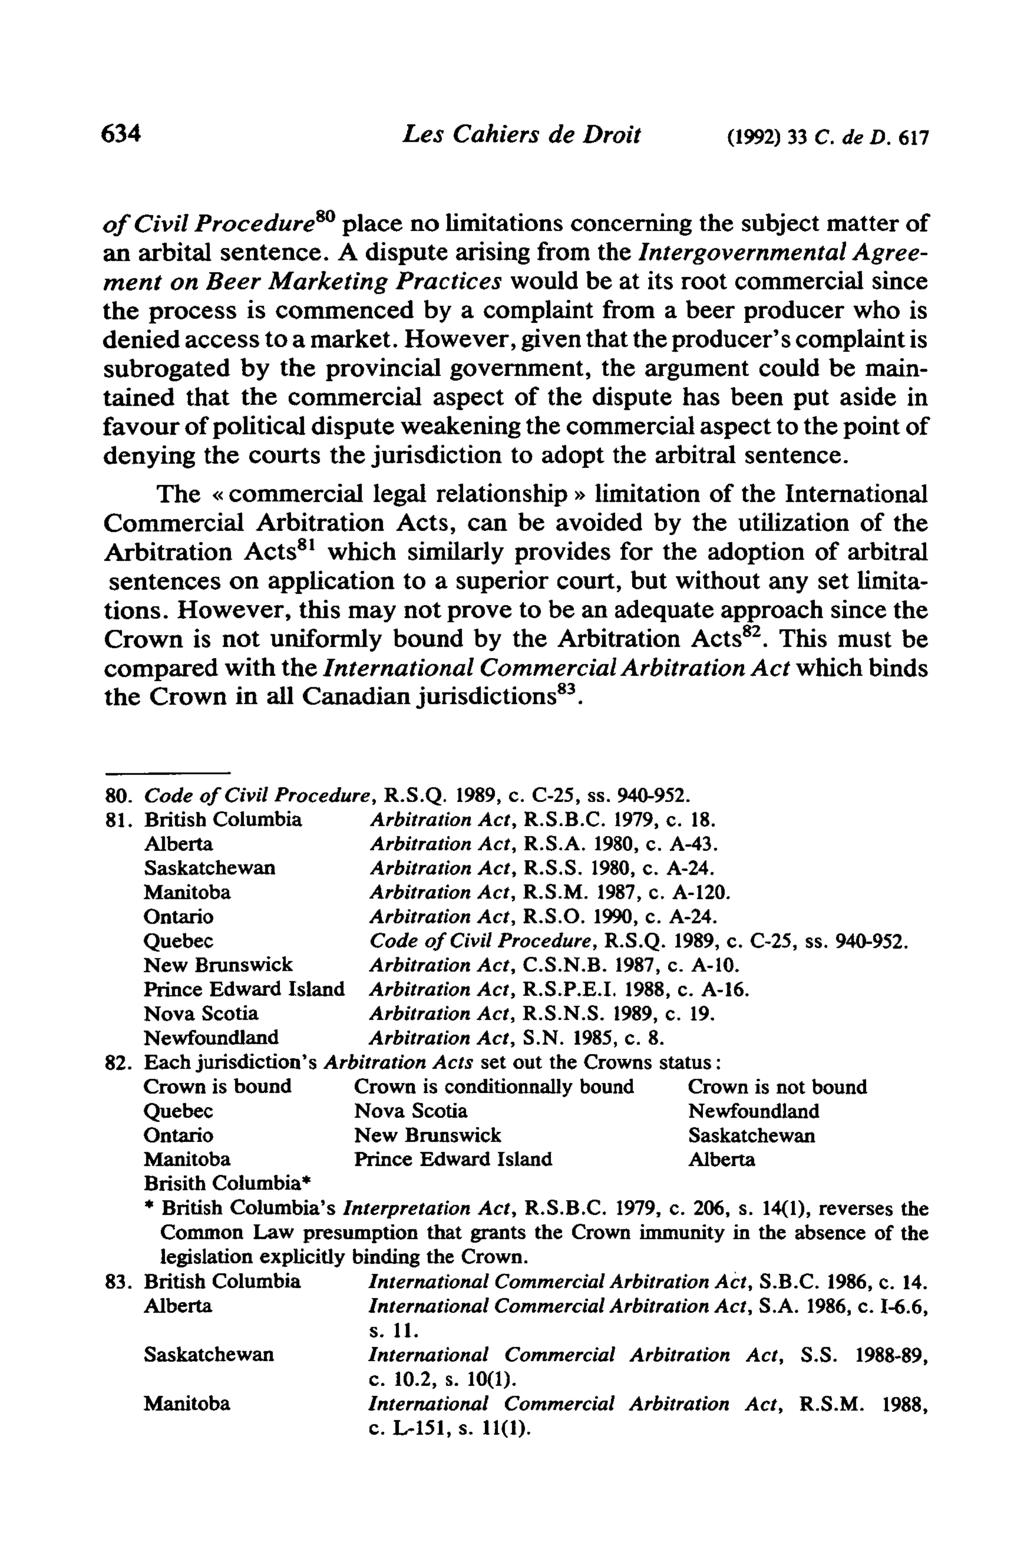 634 Les Cahiers de Droit (1992) 33 C. de D. 617 of Civil Procedure 80 place no limitations concerning the subject matter of an arbital sentence.